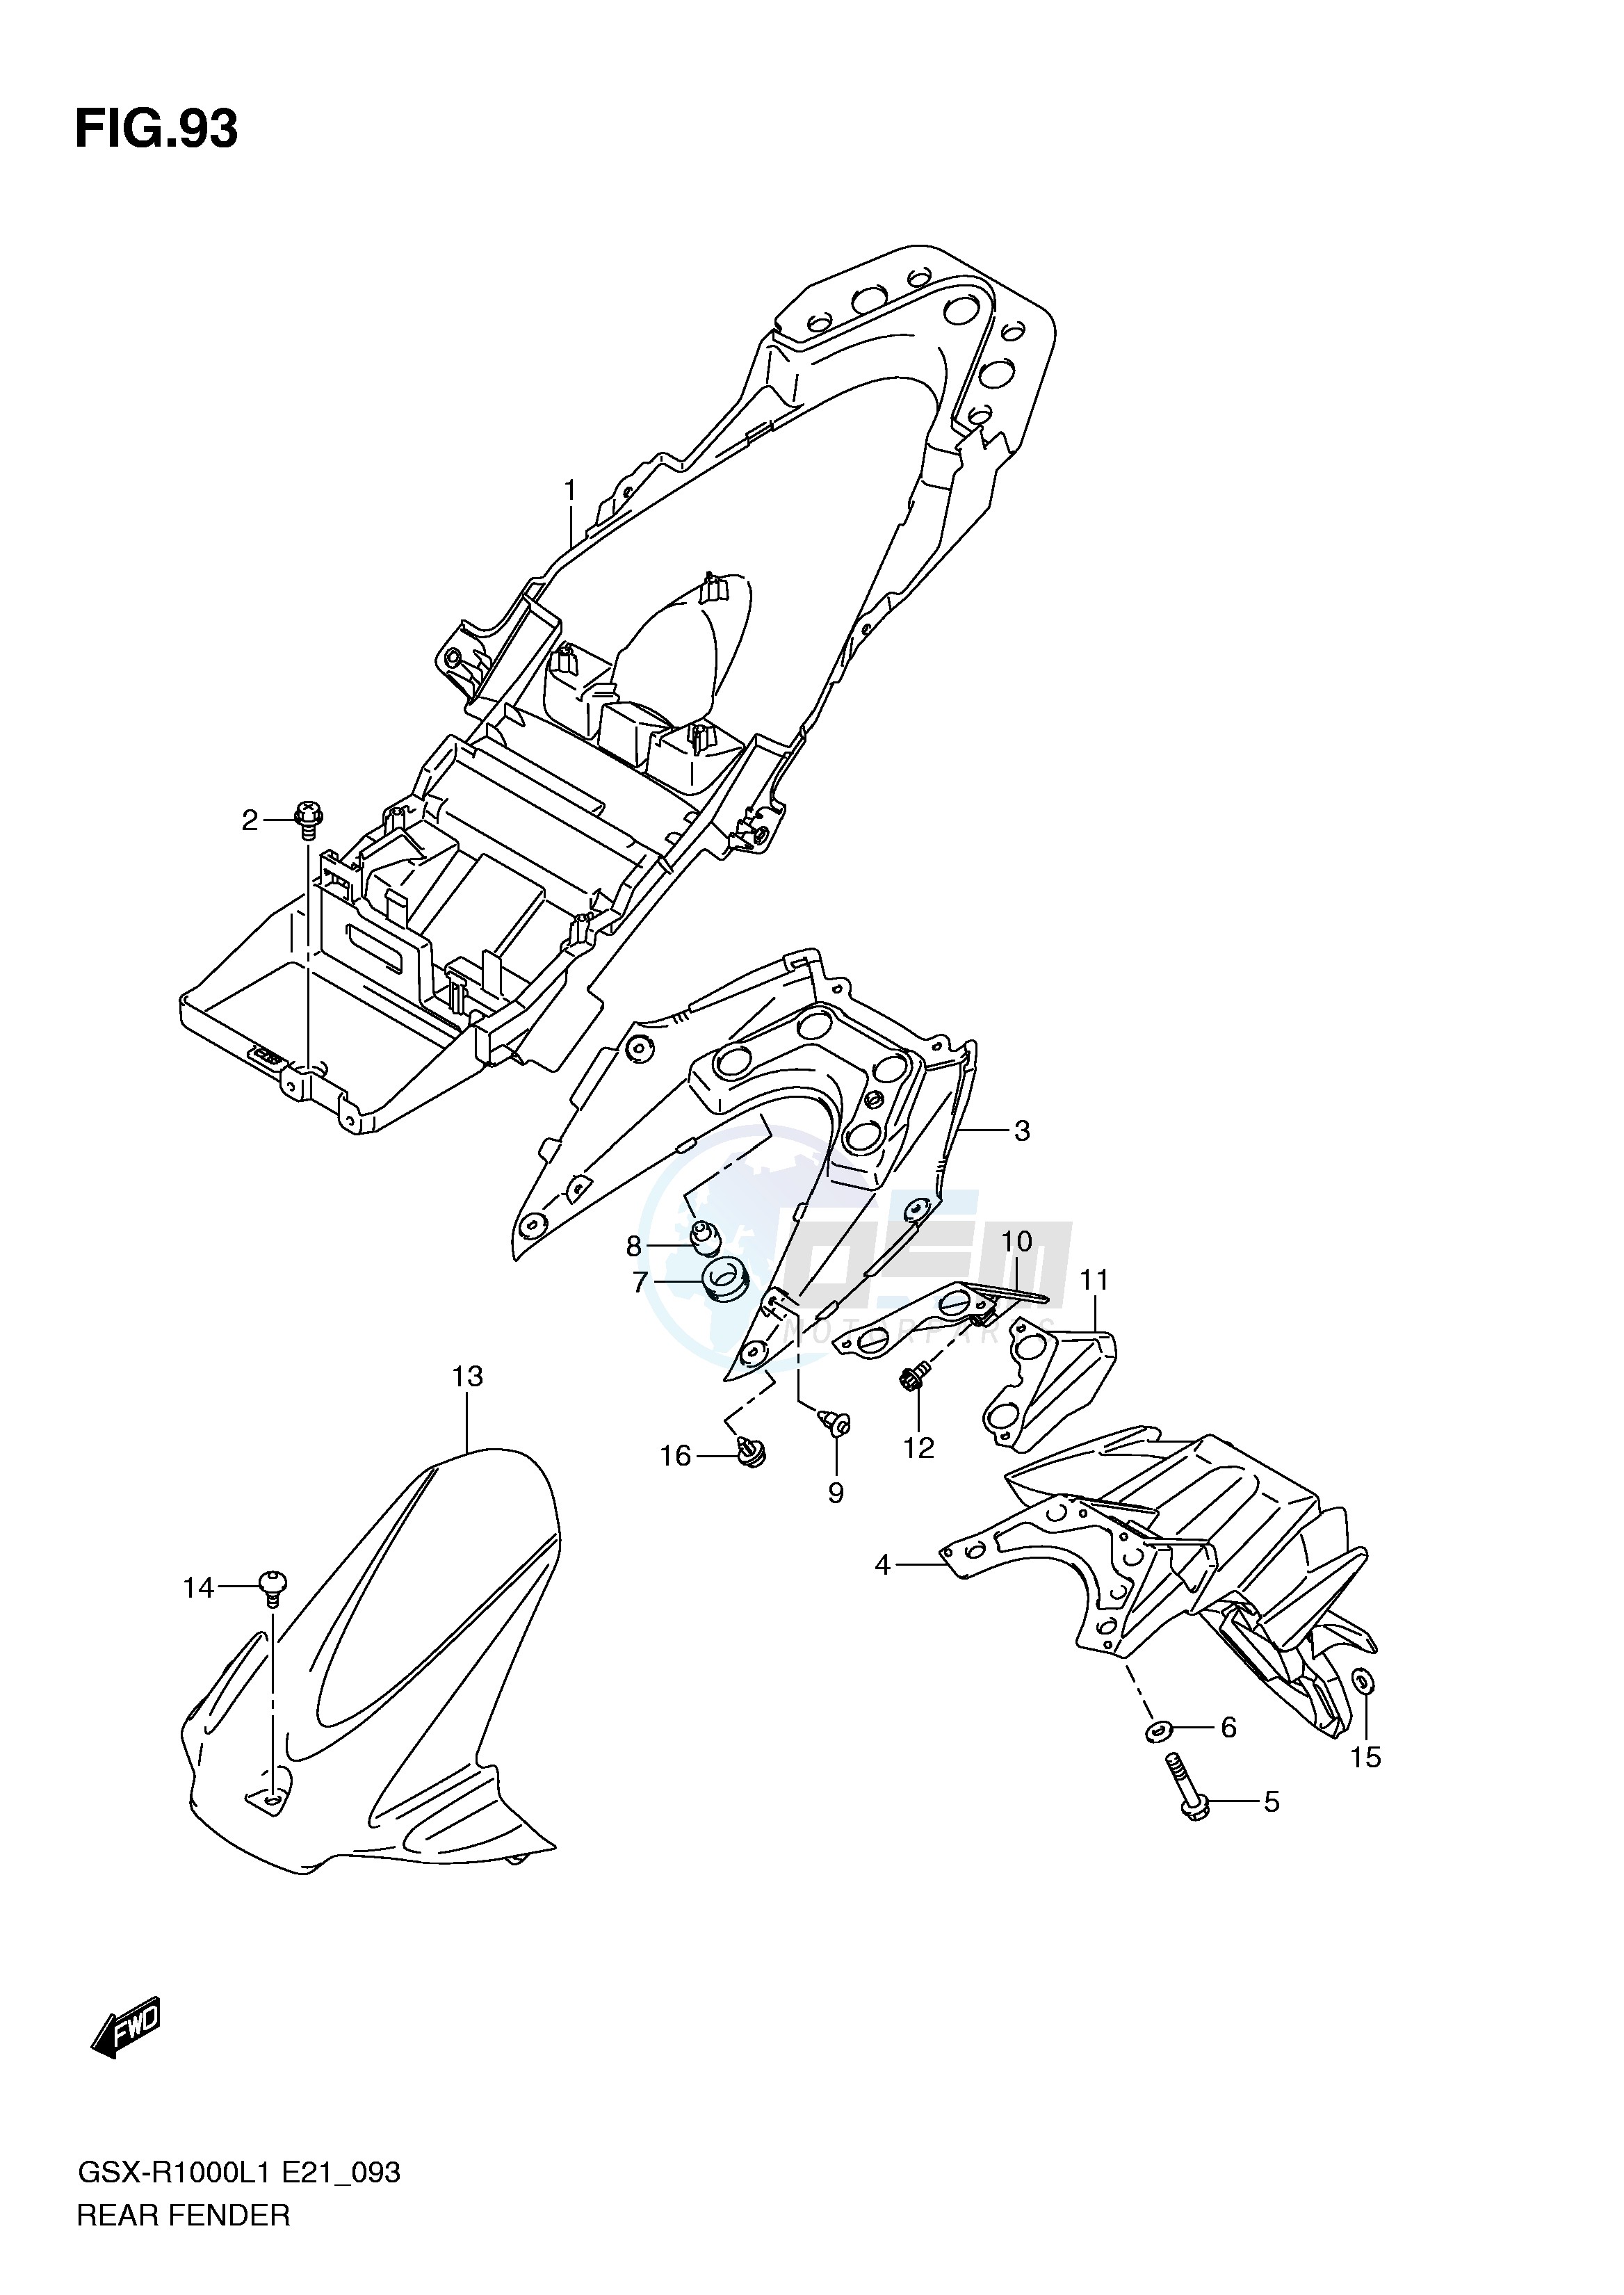 REAR FENDER (GSX-R1000UFL1 E21) blueprint